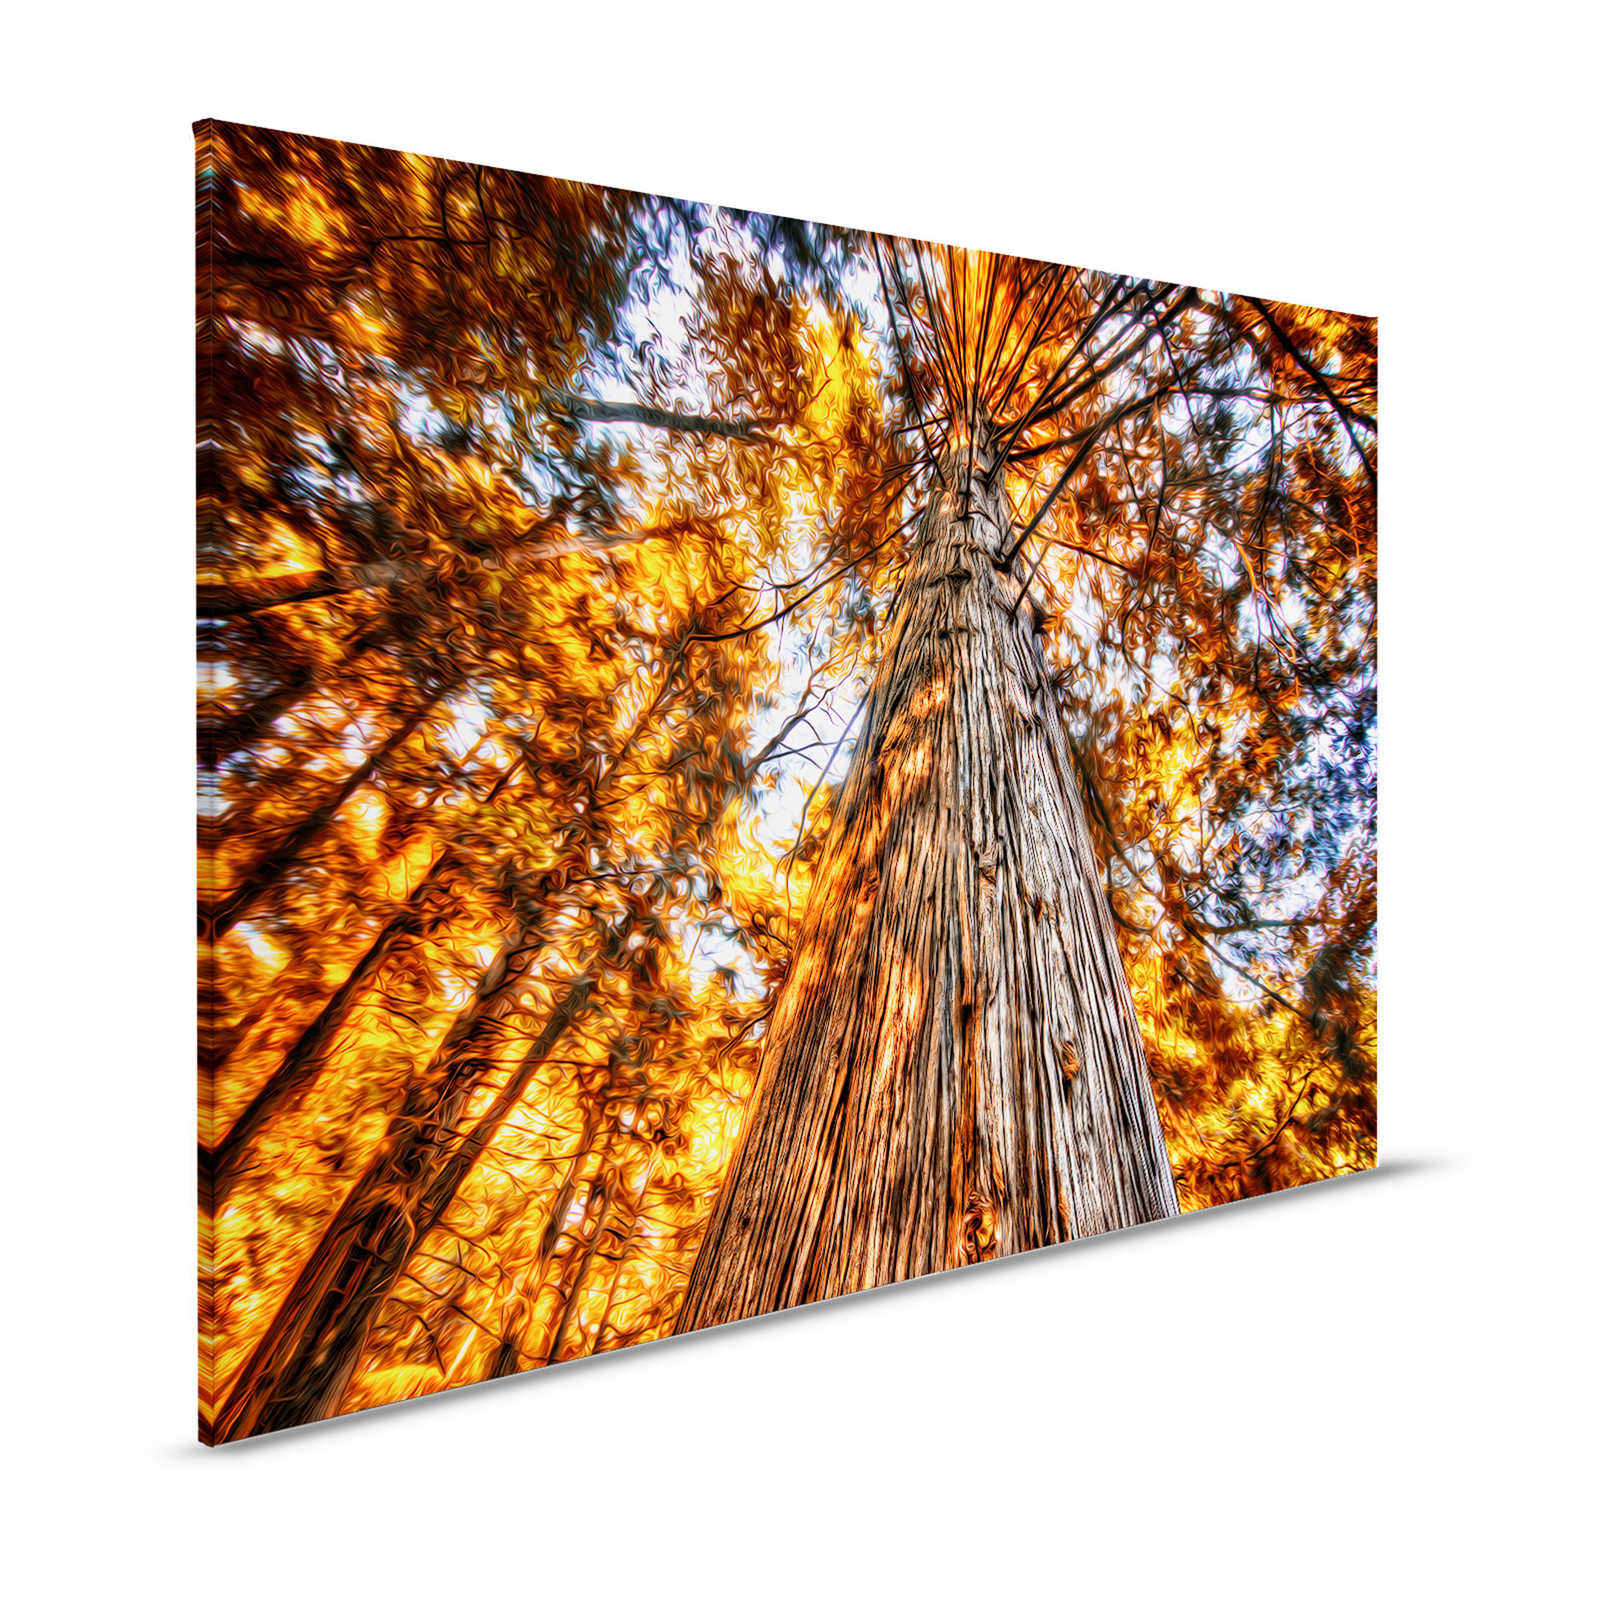 Leinwandbild Blick in die Baumkrone in glühenden Farben – 1,20 m x 0,80 m
